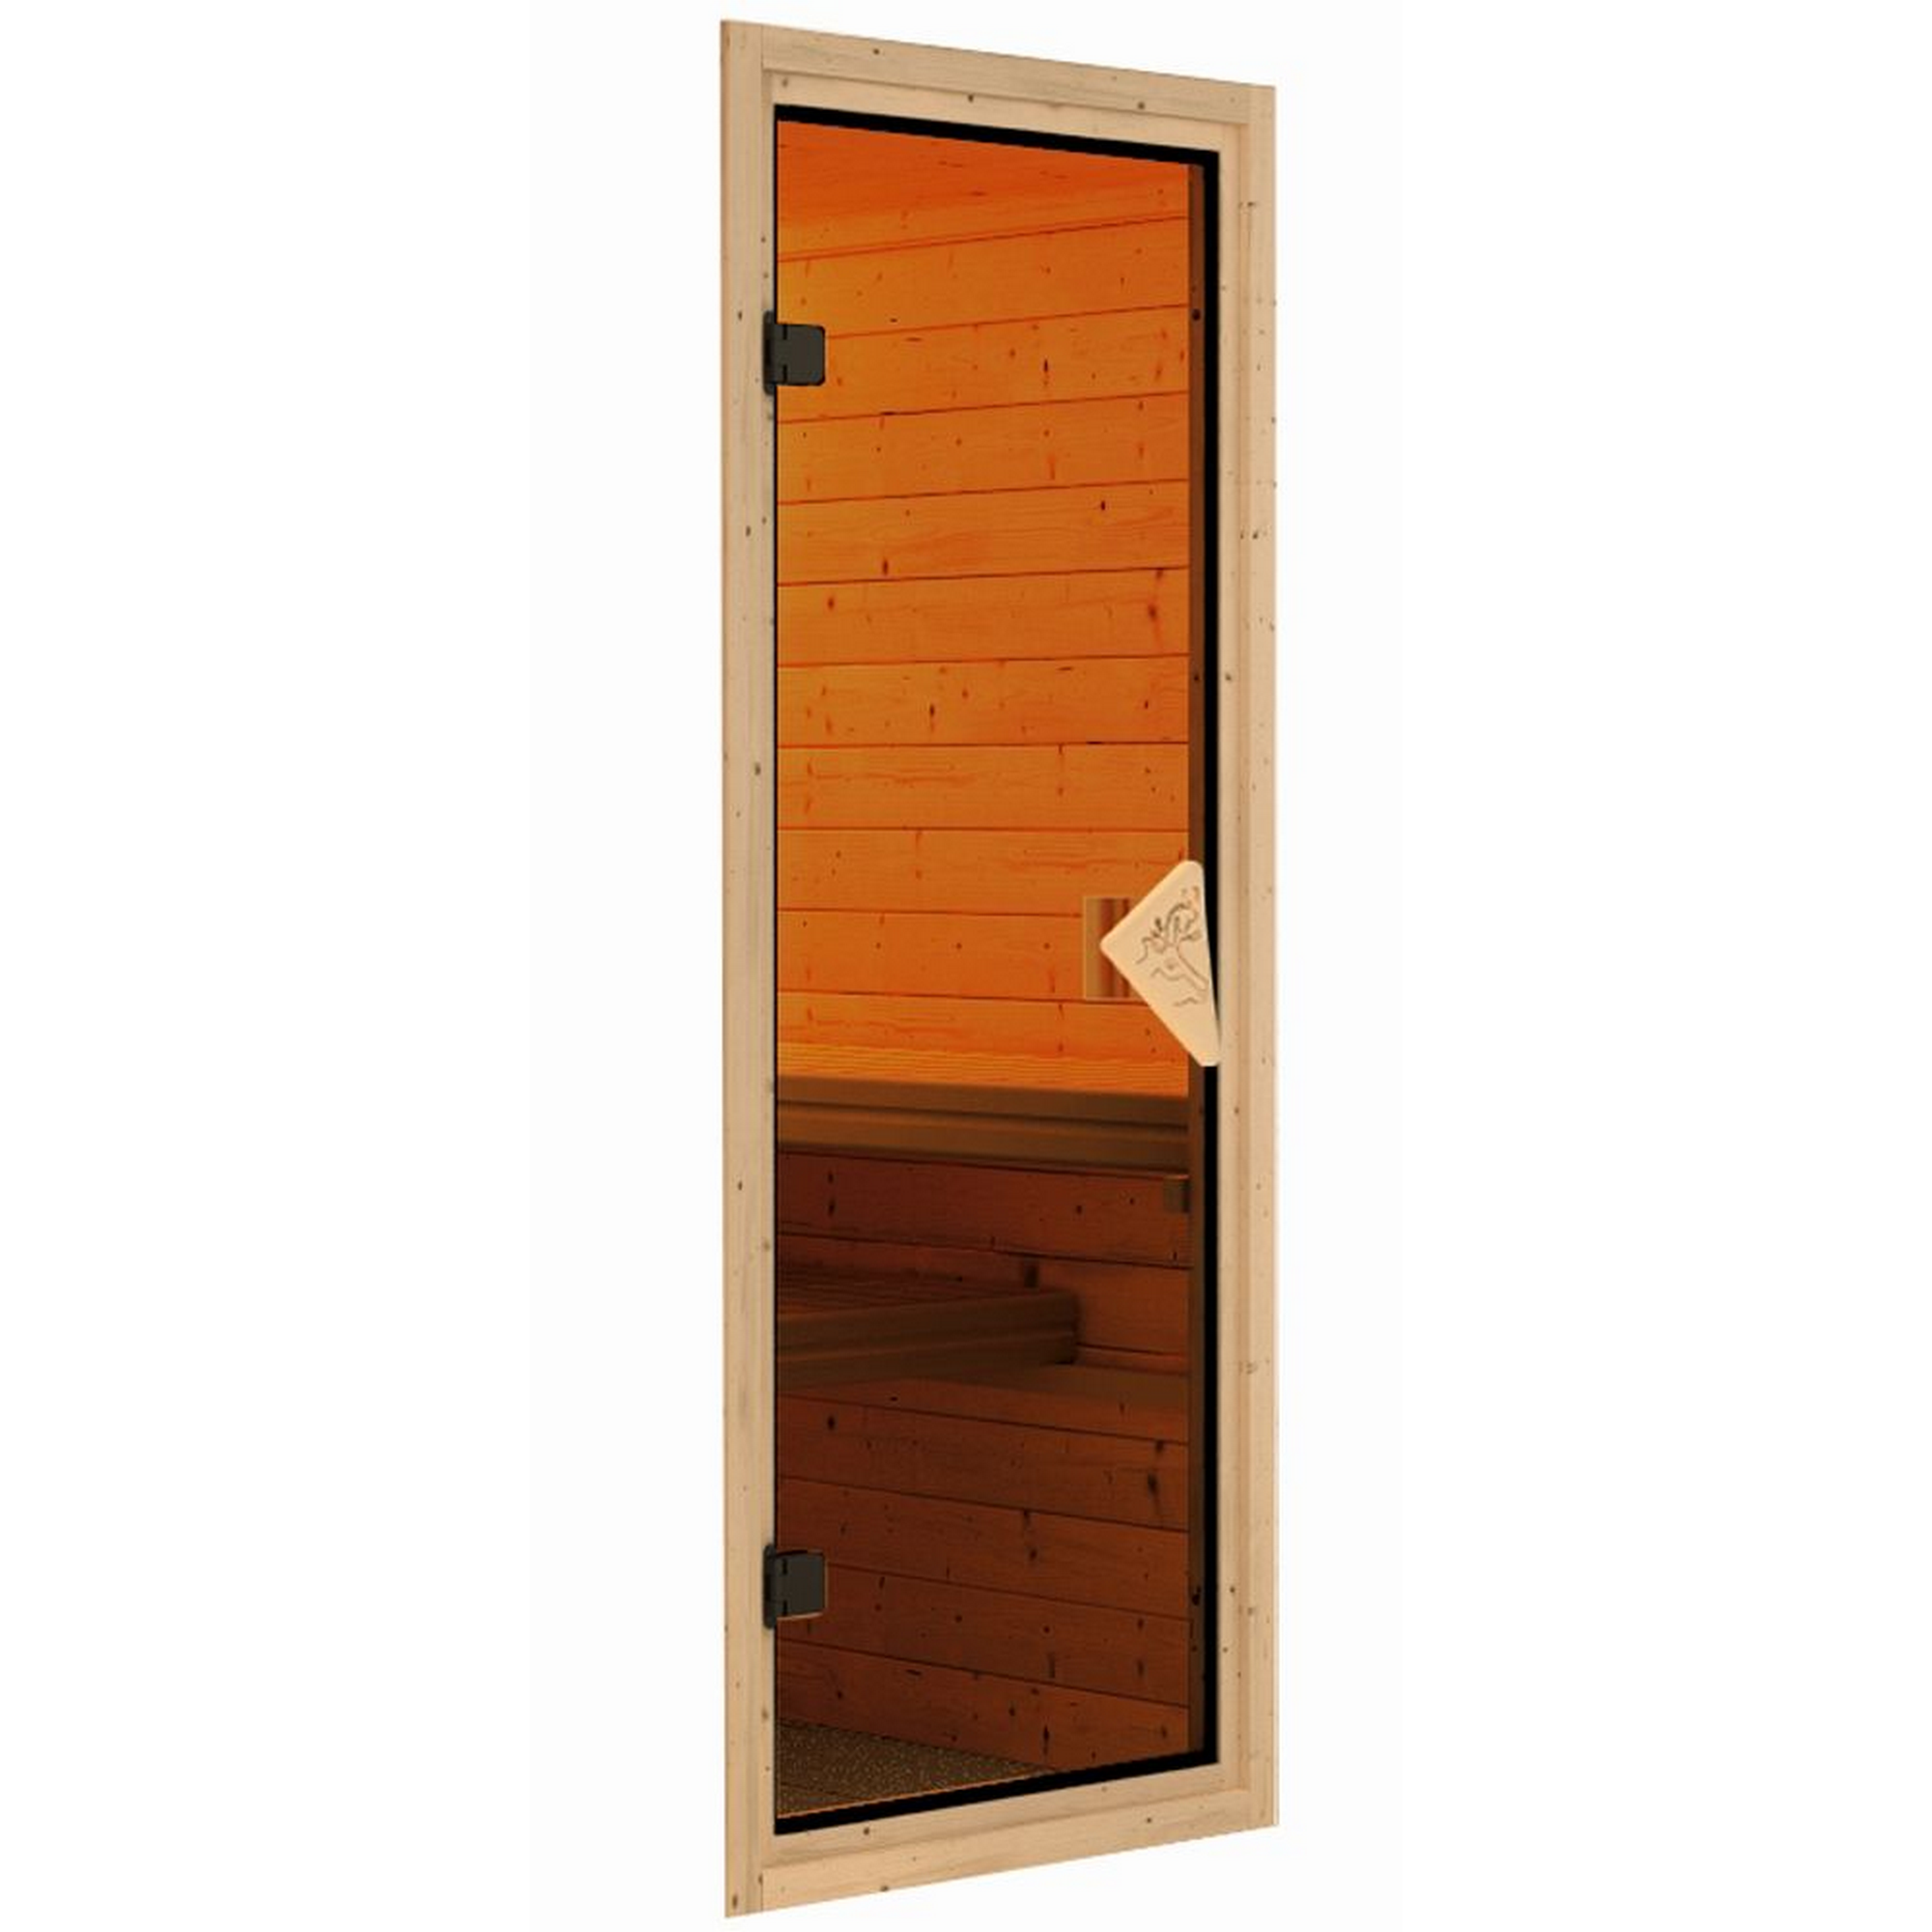 Sauna 'Aurelia 2' naturbelassen mit Kranz und bronzierter Tür 245 x 245 x 202 cm + product picture